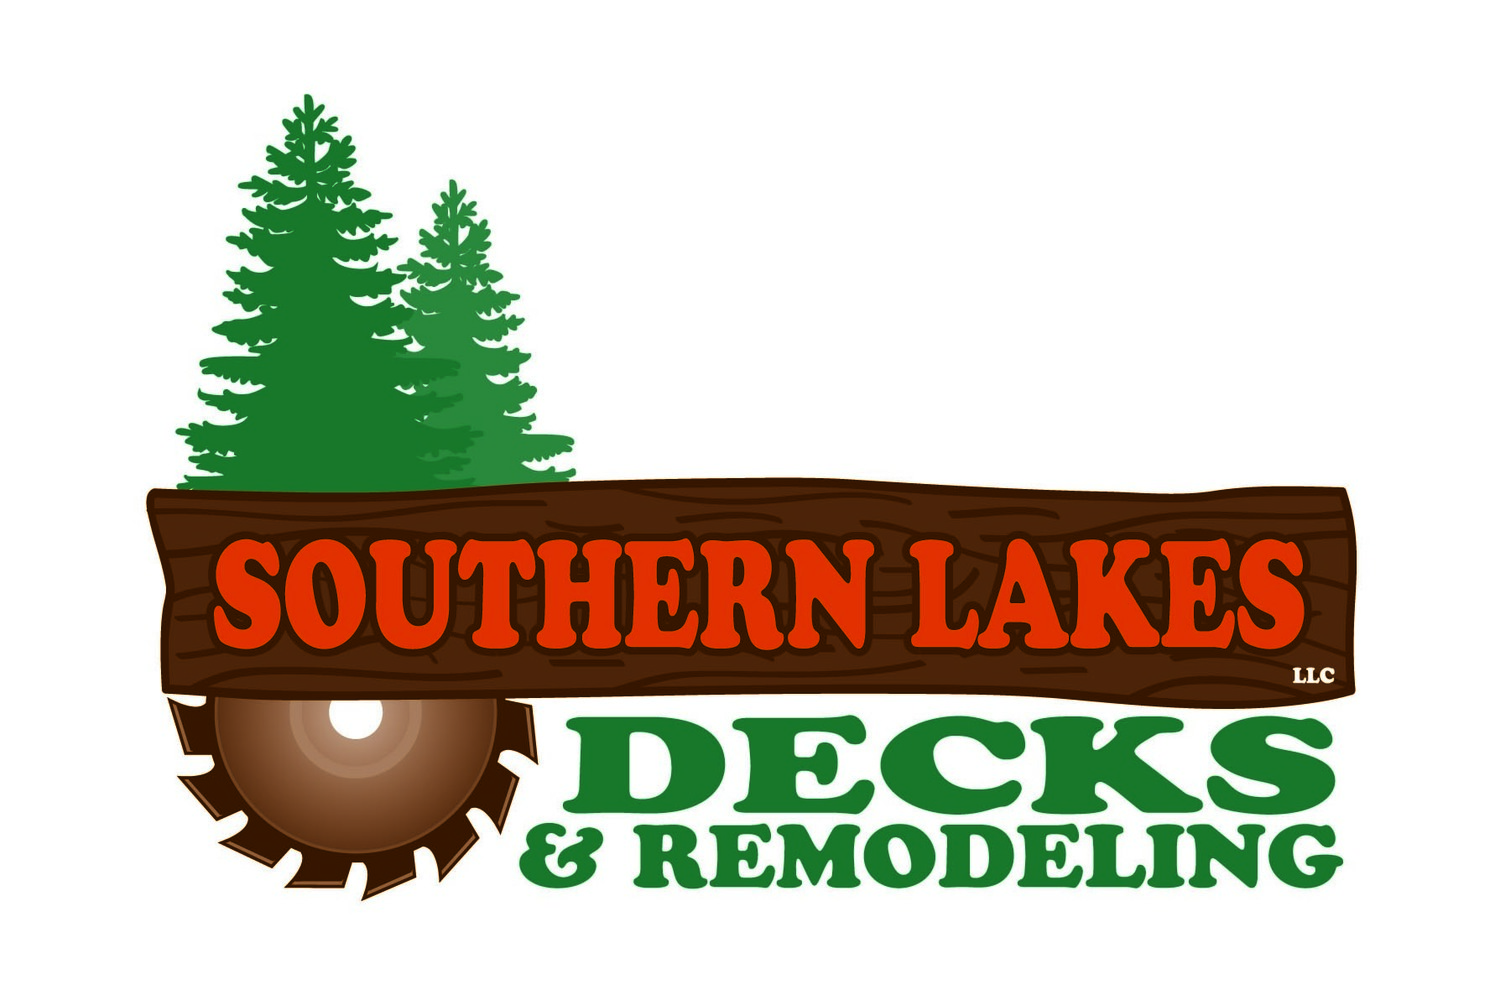 Southern Lakes Decks & Remodeling